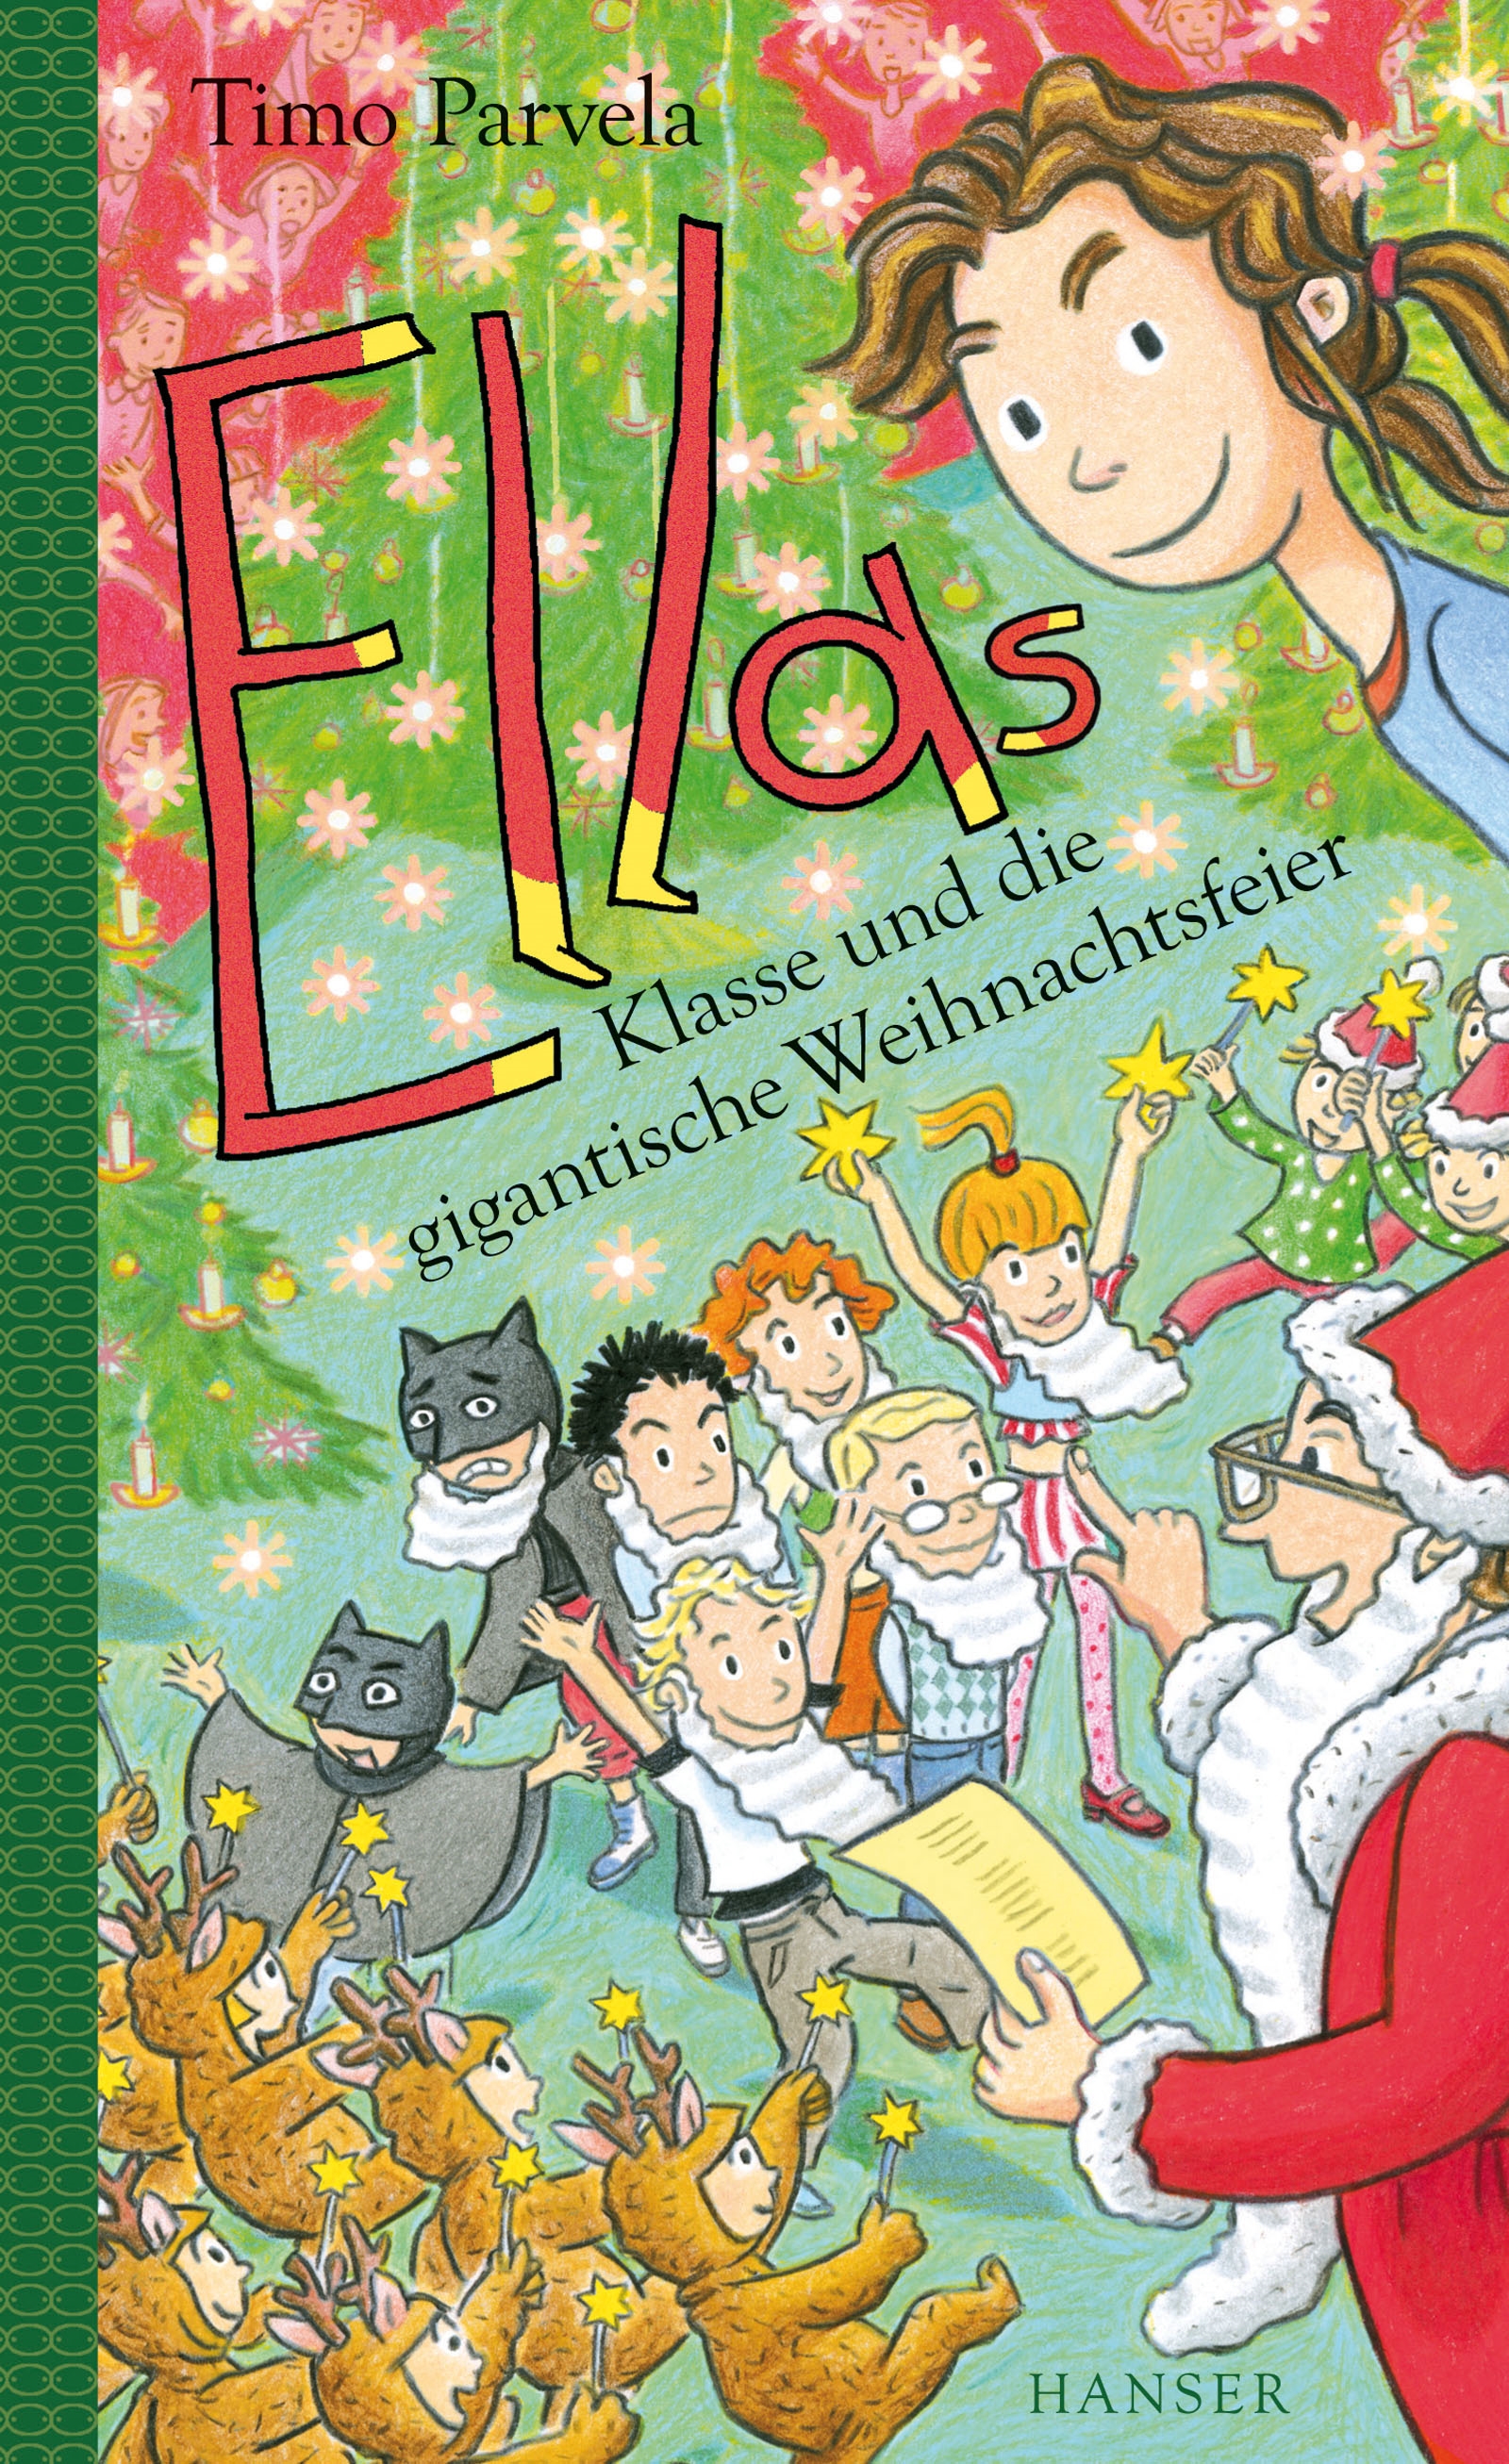 Buchcover "Ellas Klasse und die gigantische Weihnachtsfeier", Hanser